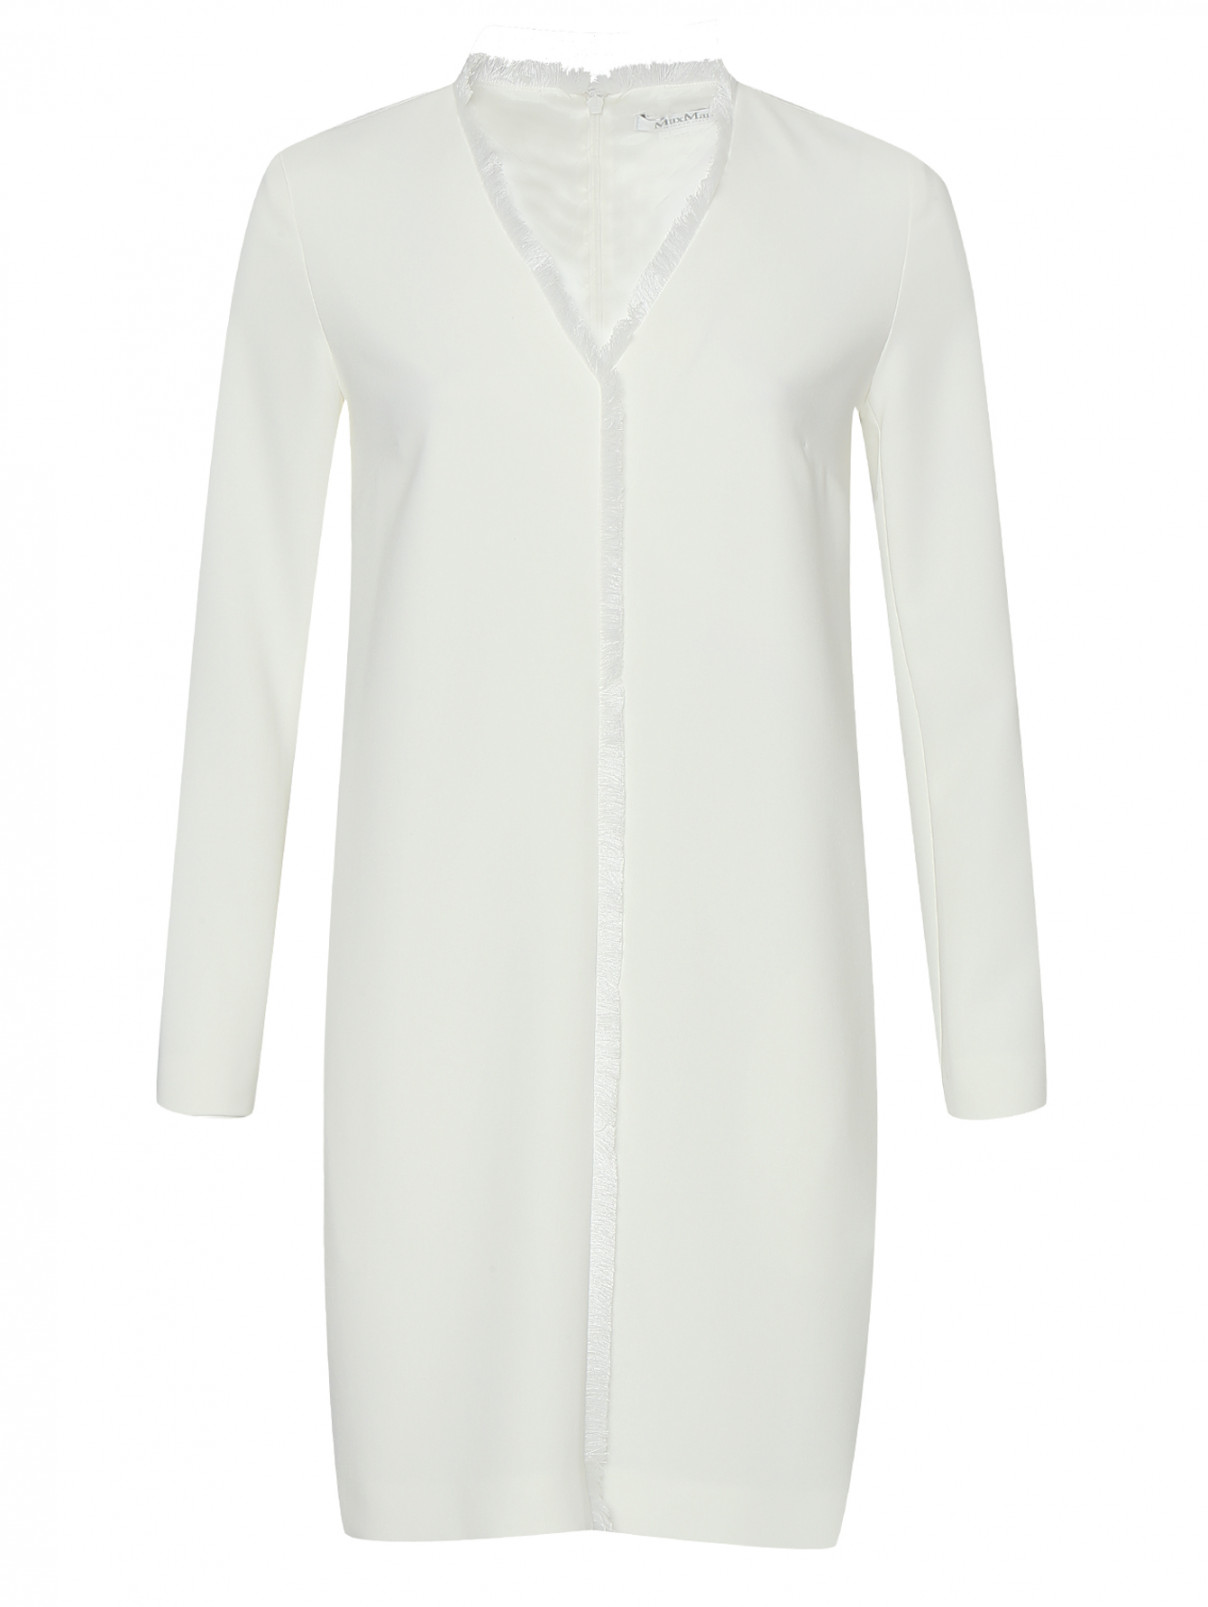 Платье с отделкой бахромой Max Mara  –  Общий вид  – Цвет:  Белый